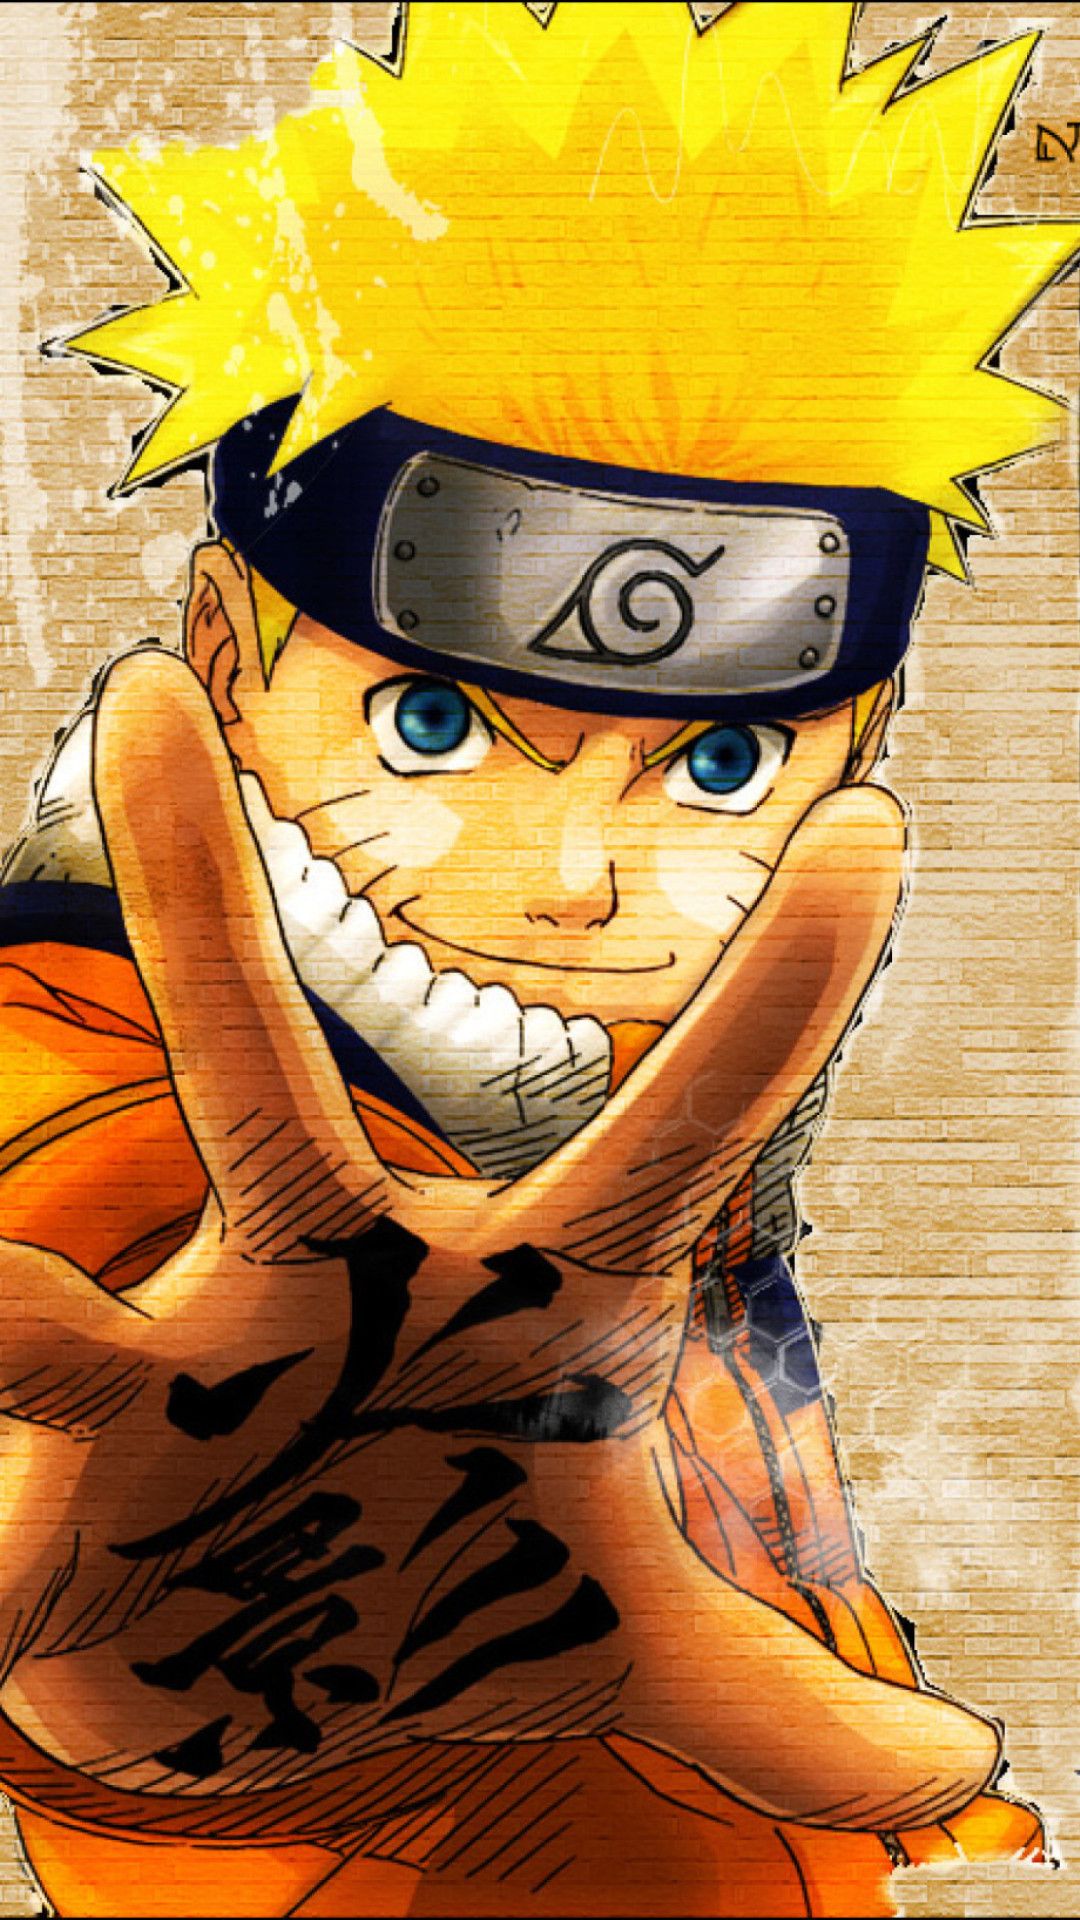 Naruto iPhone 6 Wallpaper. Naruto wallpaper, Naruto wallpaper iphone, Anime wallpaper iphone